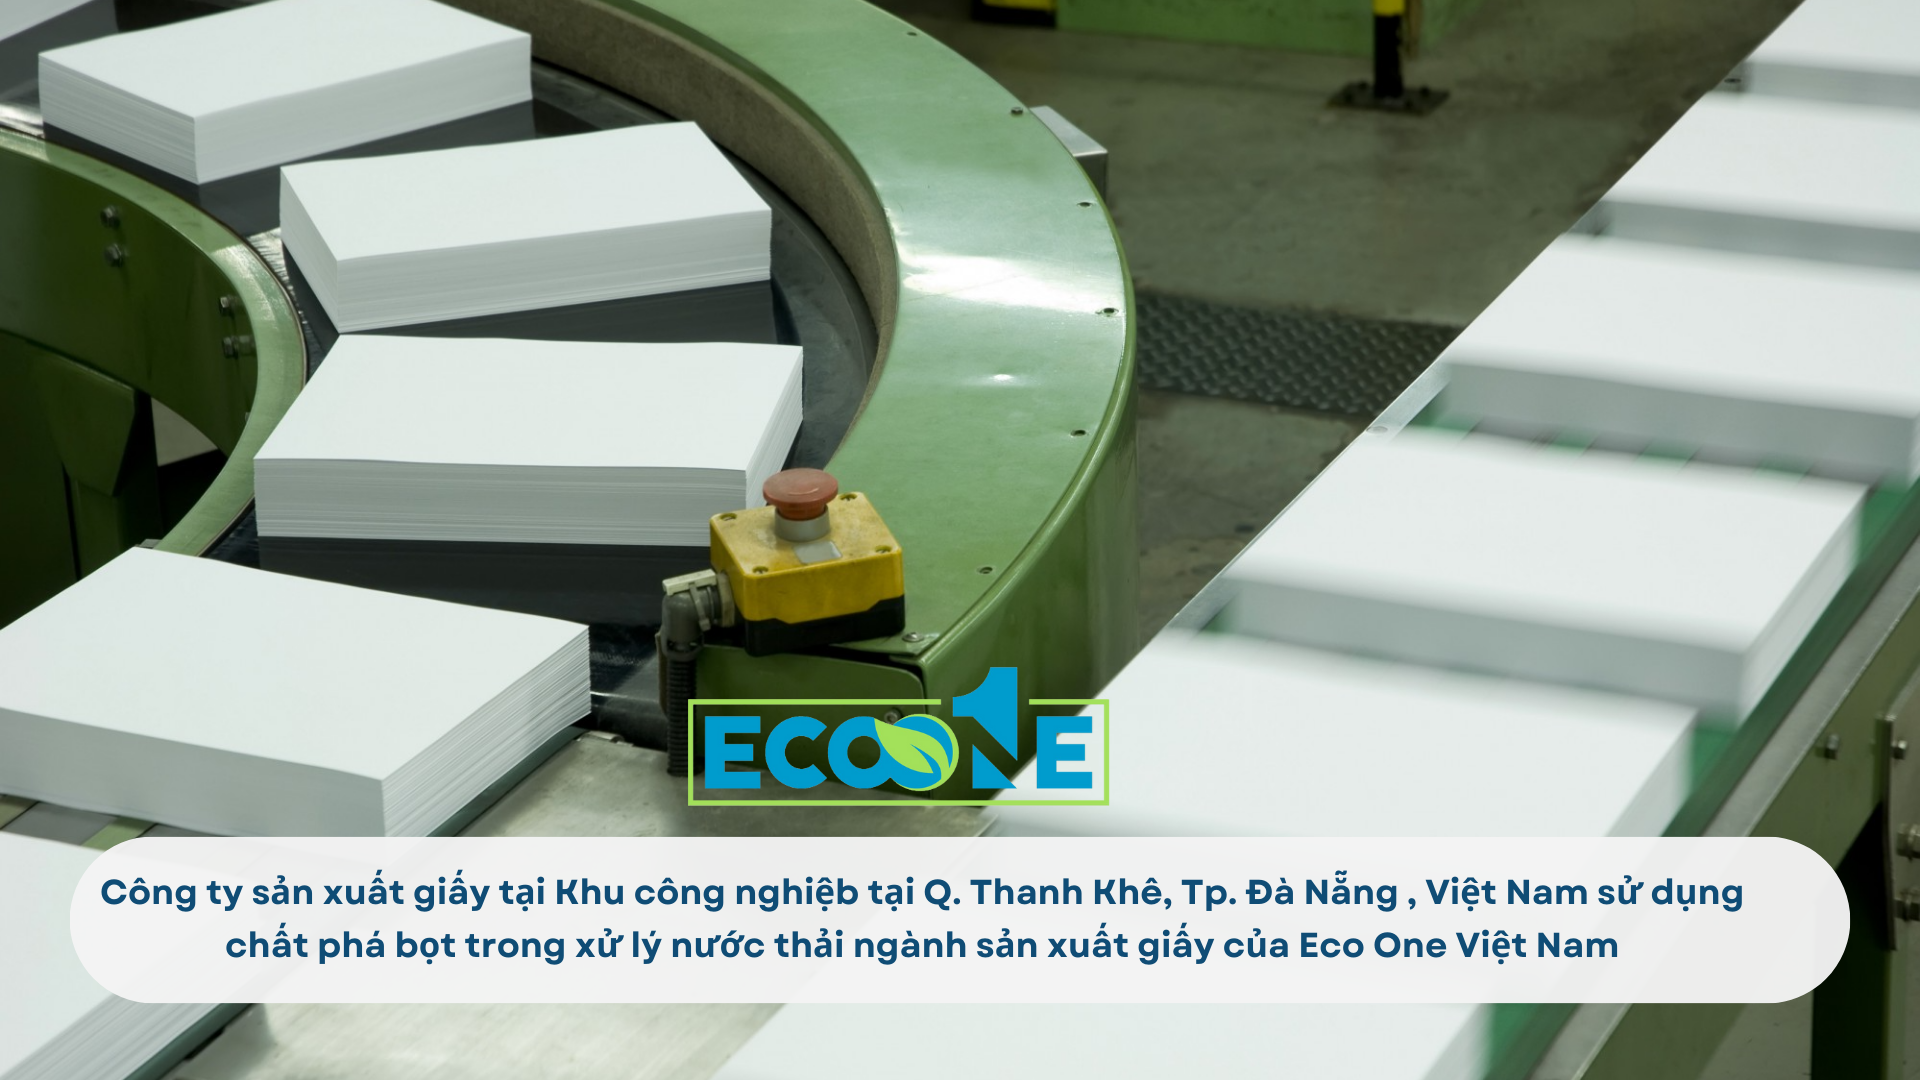 Công ty sản xuất giấy tại Khu công nghiệb tại Q. Thanh Khê, Tp. Đà Nẵng , Việt Nam sử dụng chất phá bọt trong xử lý nước thải ngành sản xuất giấy của Eco One Việt Nam